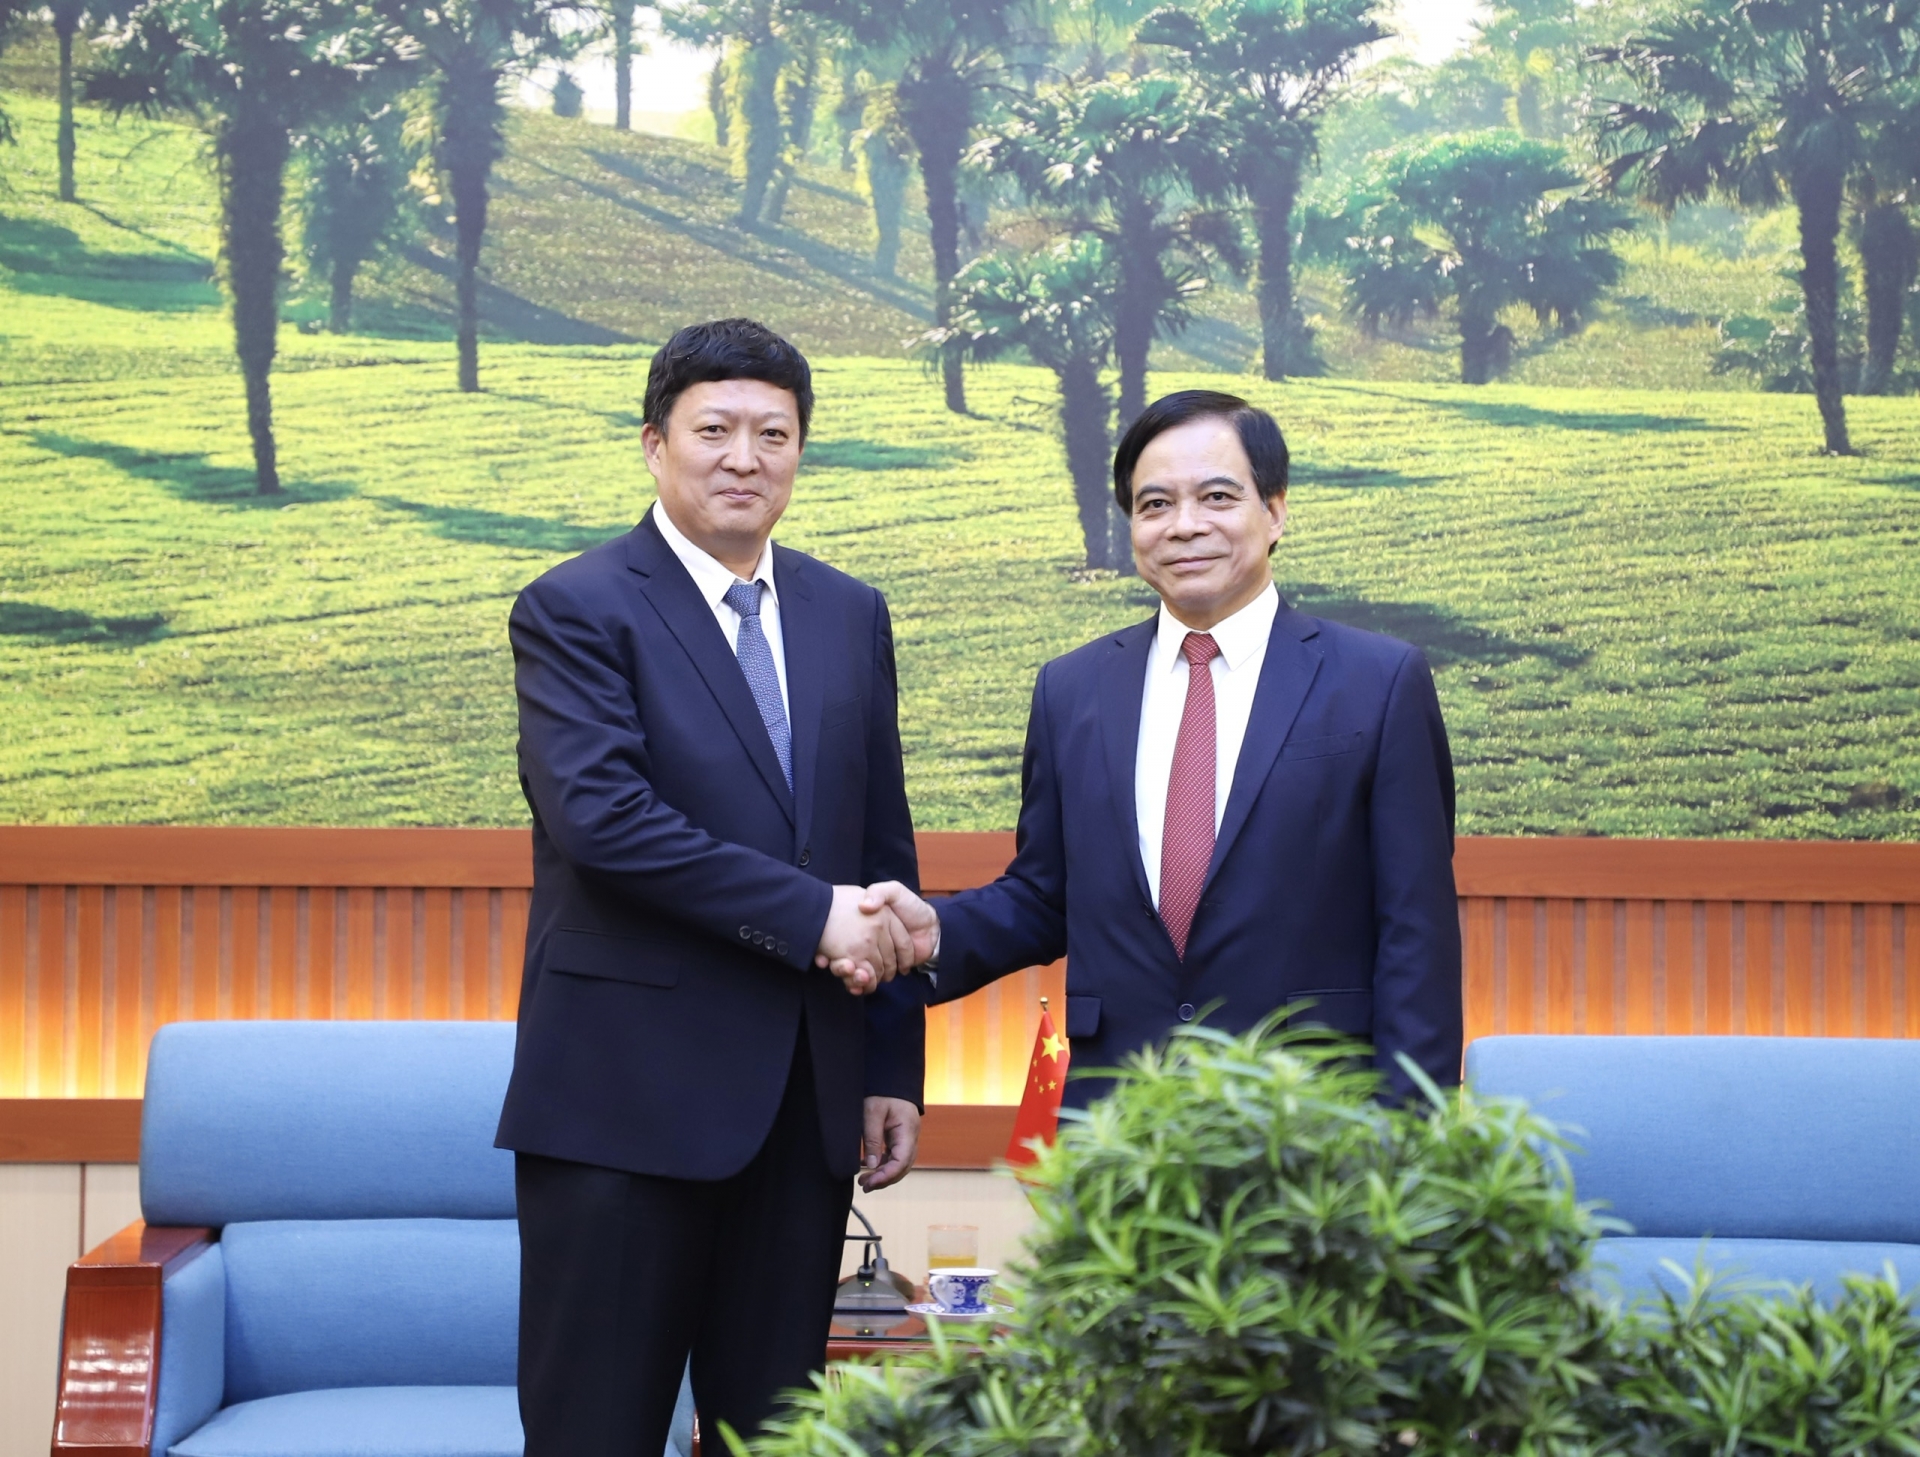 省人民委员会副主席阮青海和隽新阳在4月18日的工作会议上。